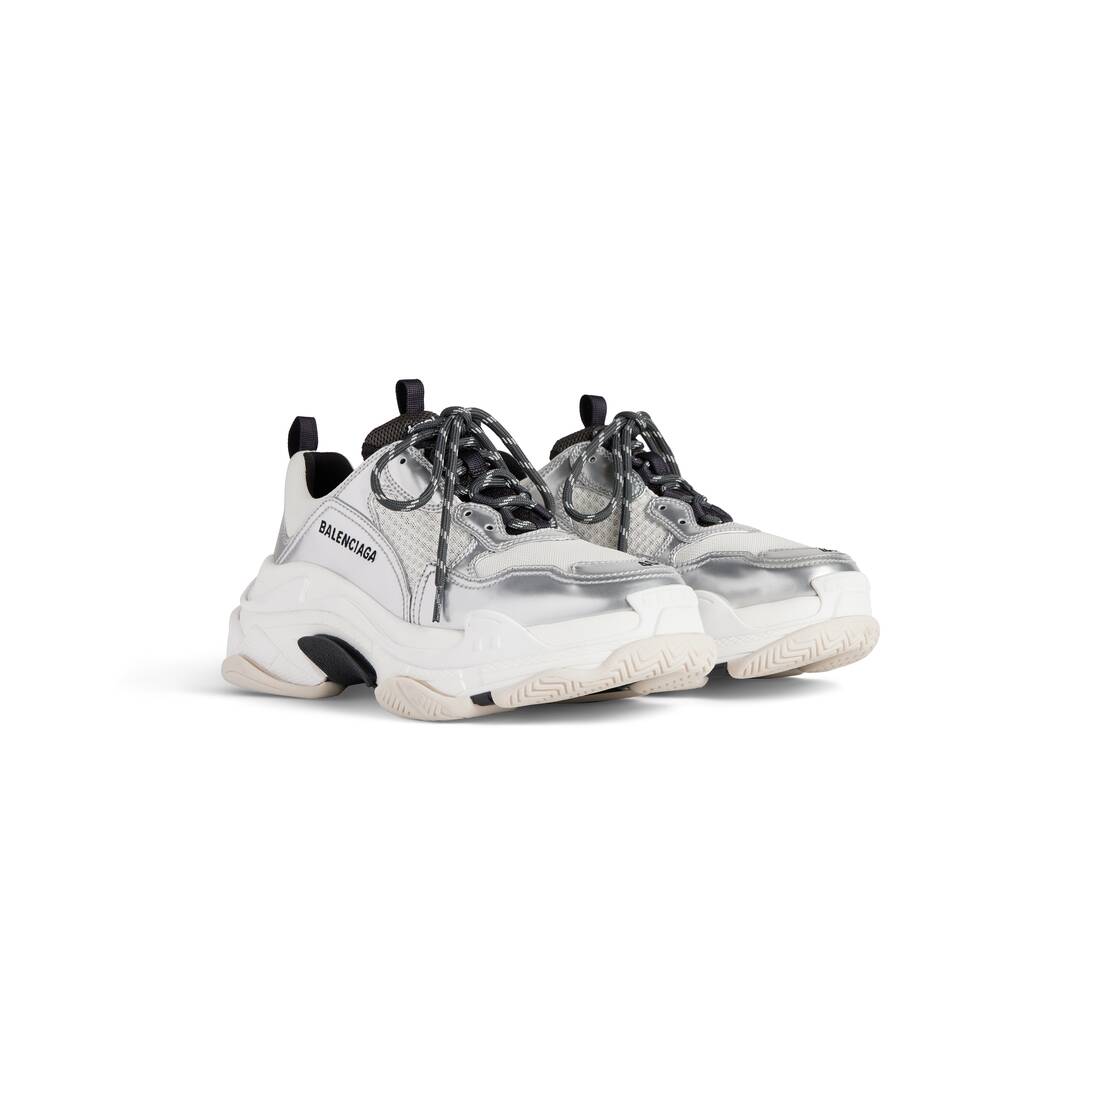 Men's Triple S Sneaker in Black/white/silver